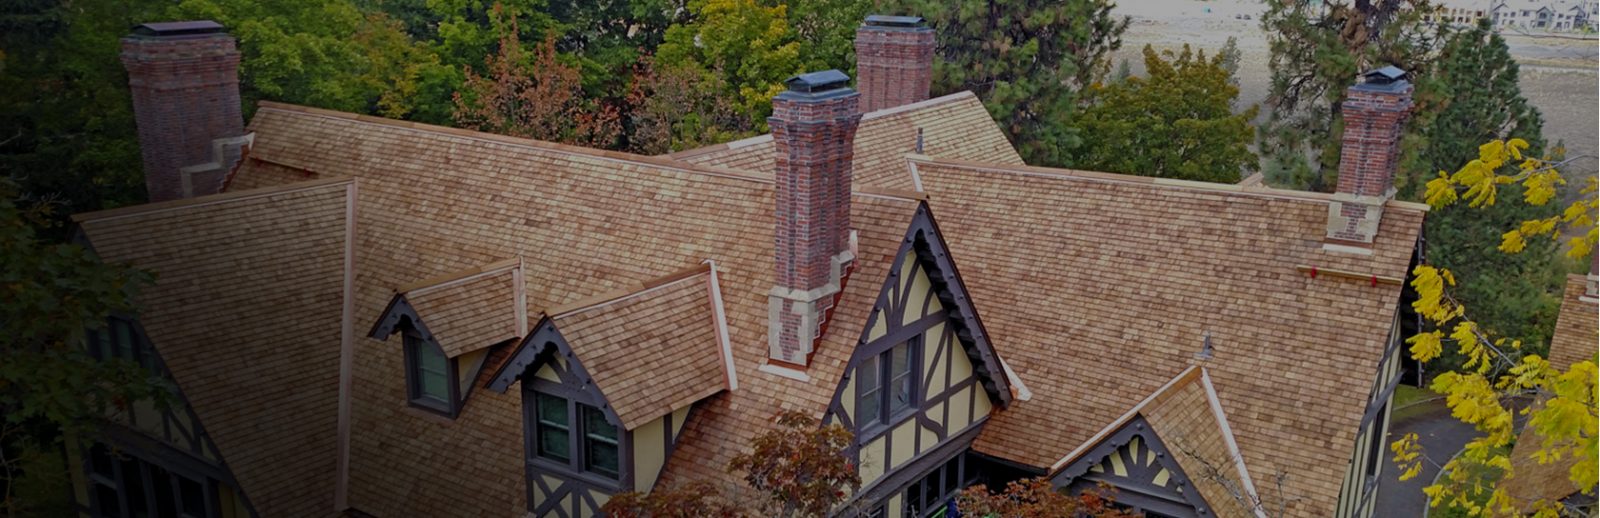 cedar roof on a house